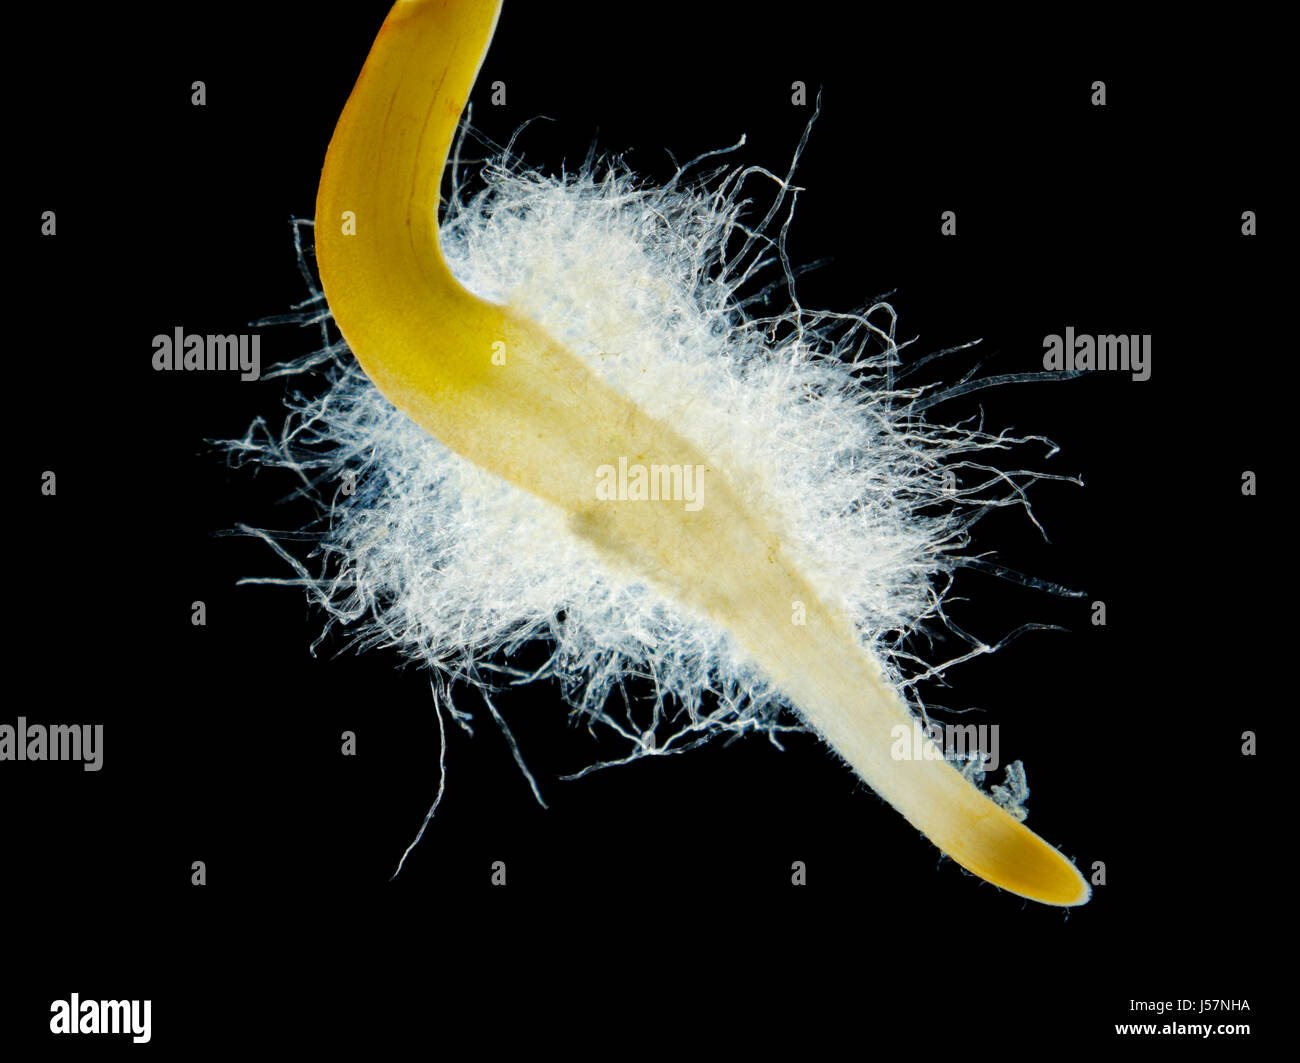 Le piment (Capsicum annuum) cheveux racinaires des semis de près. Darkfield illumination. Banque D'Images